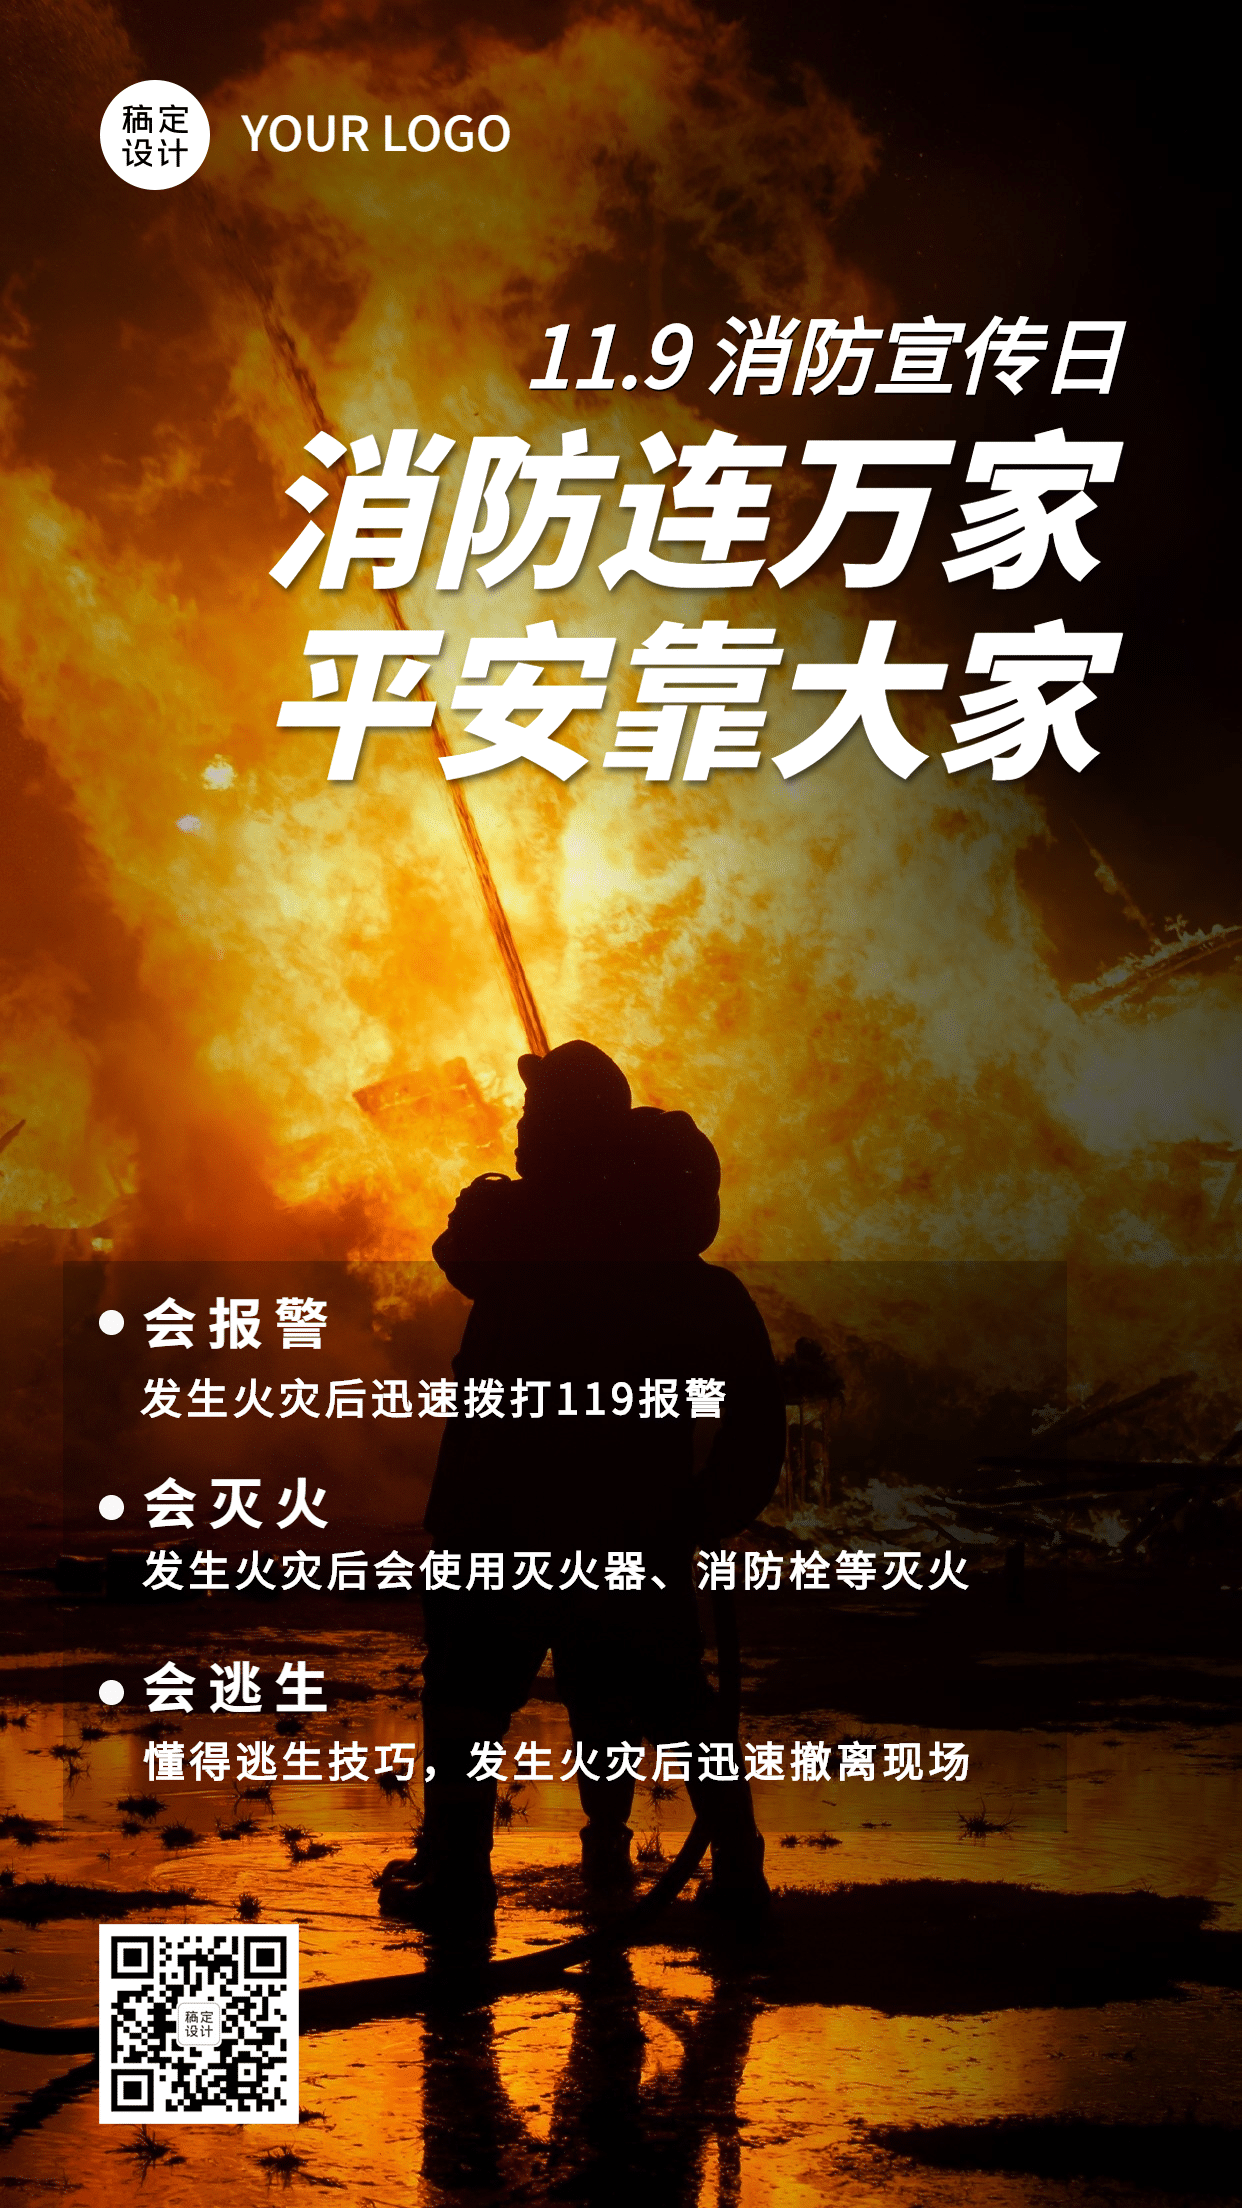 119消防宣传日消防知识科普手机海报预览效果